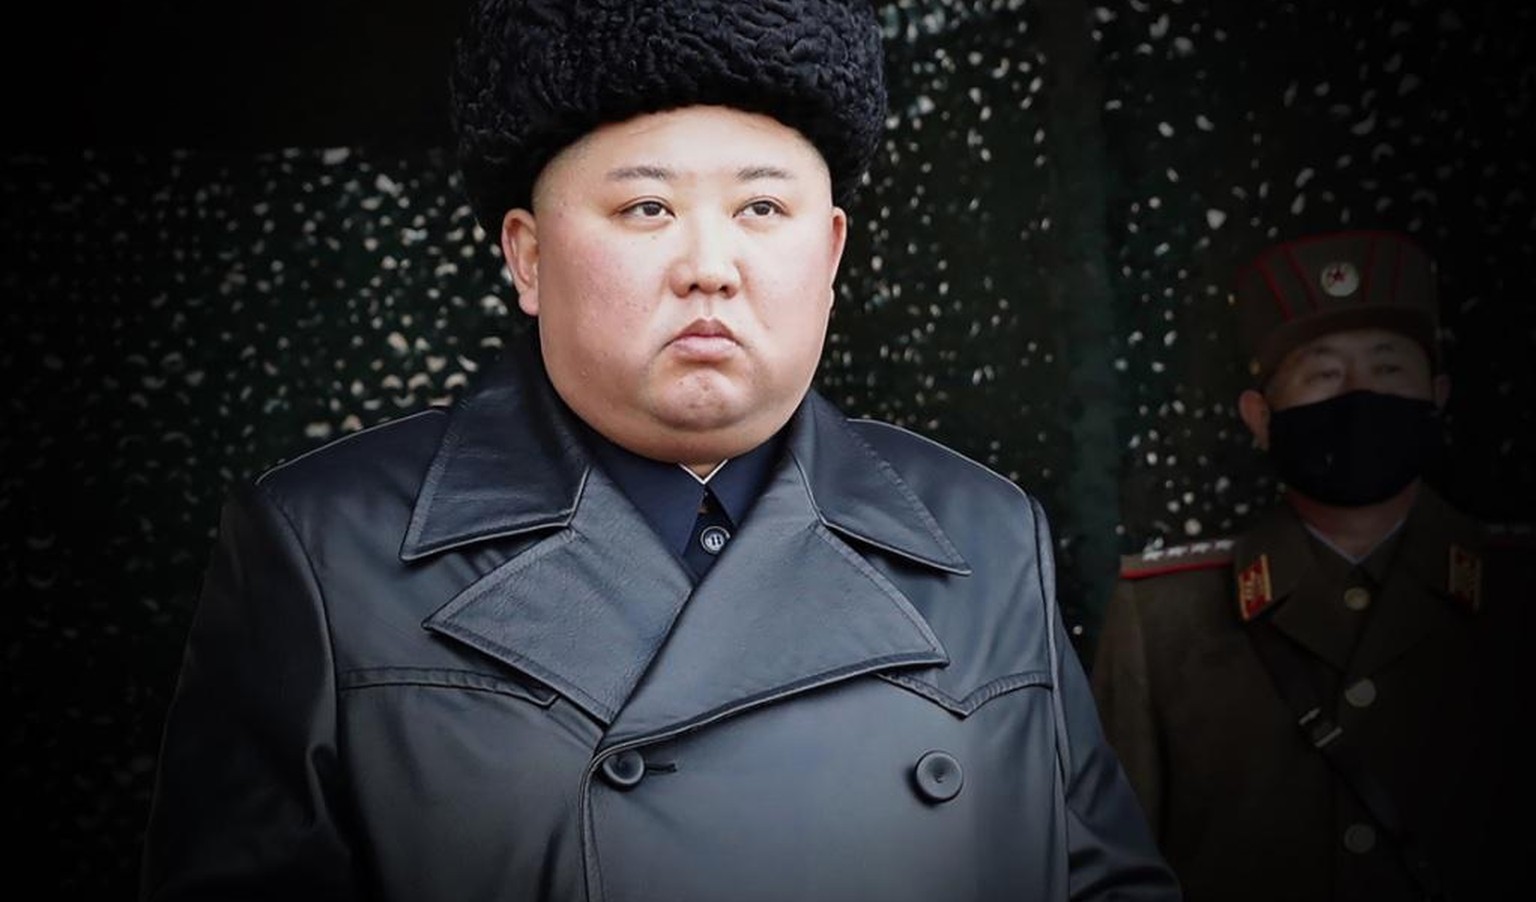 Könnte ihm sein ausufernder und ungesunder Lebensstil noch zum Verhängnis werden? Nordkoreas Machthaber Kim Jong Un (r.) ist nicht mit der allerbesten Genetik gesegnet.